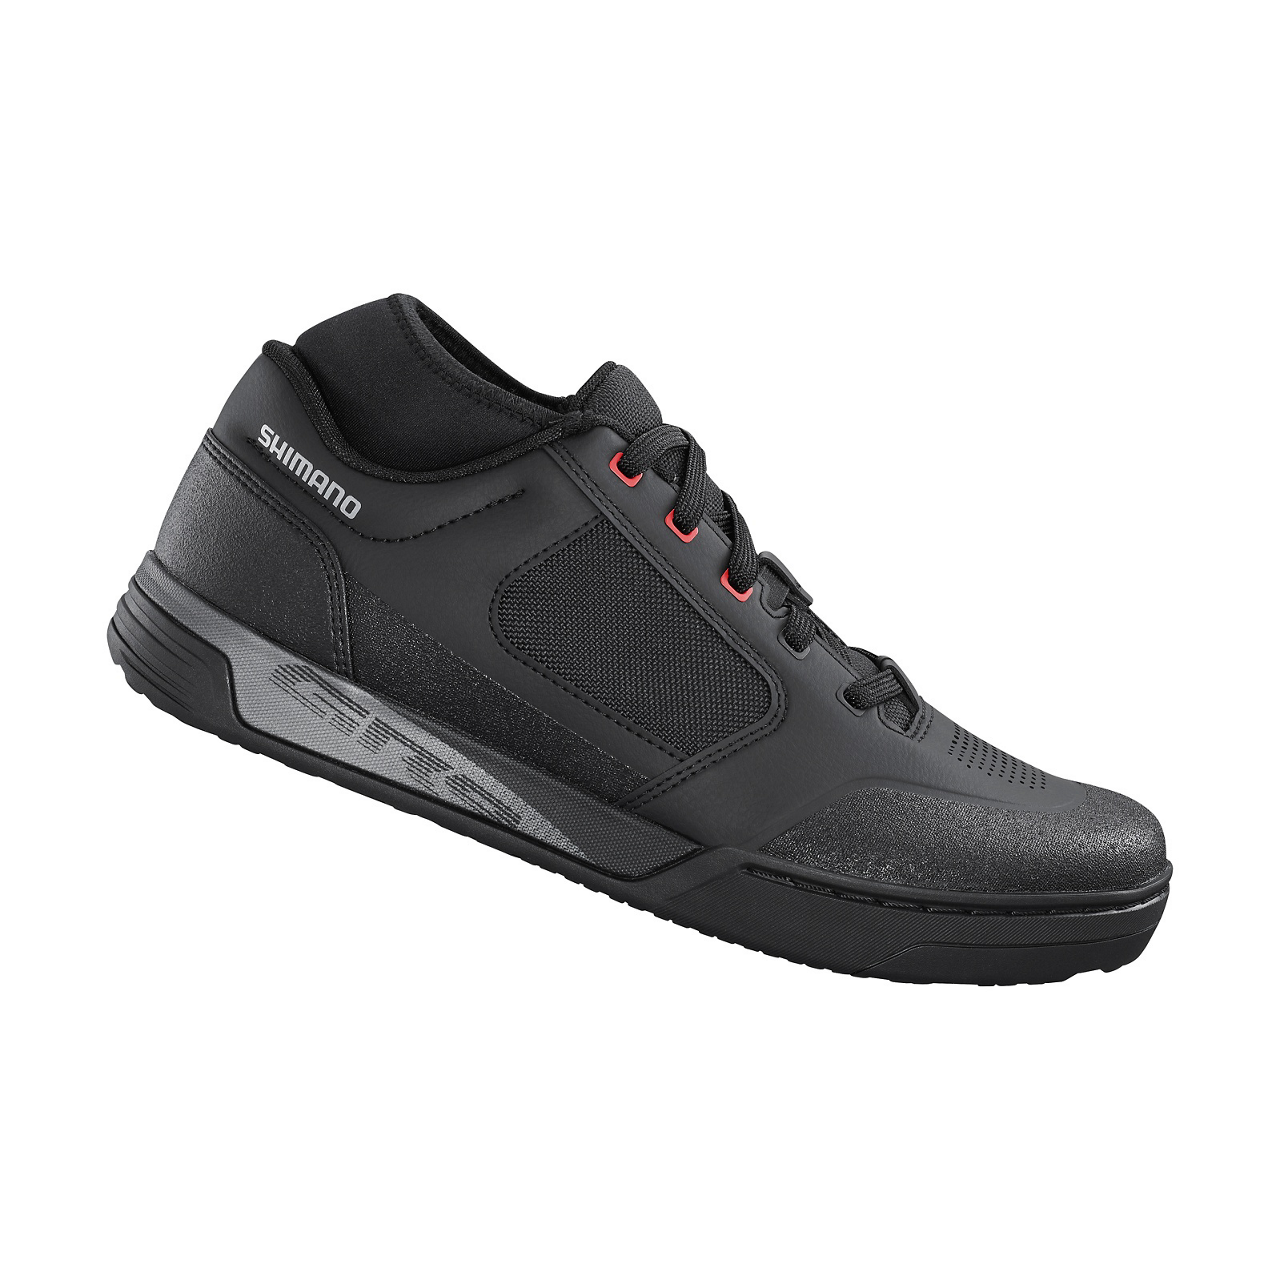 Shimano GR903 MTB Shoes Black